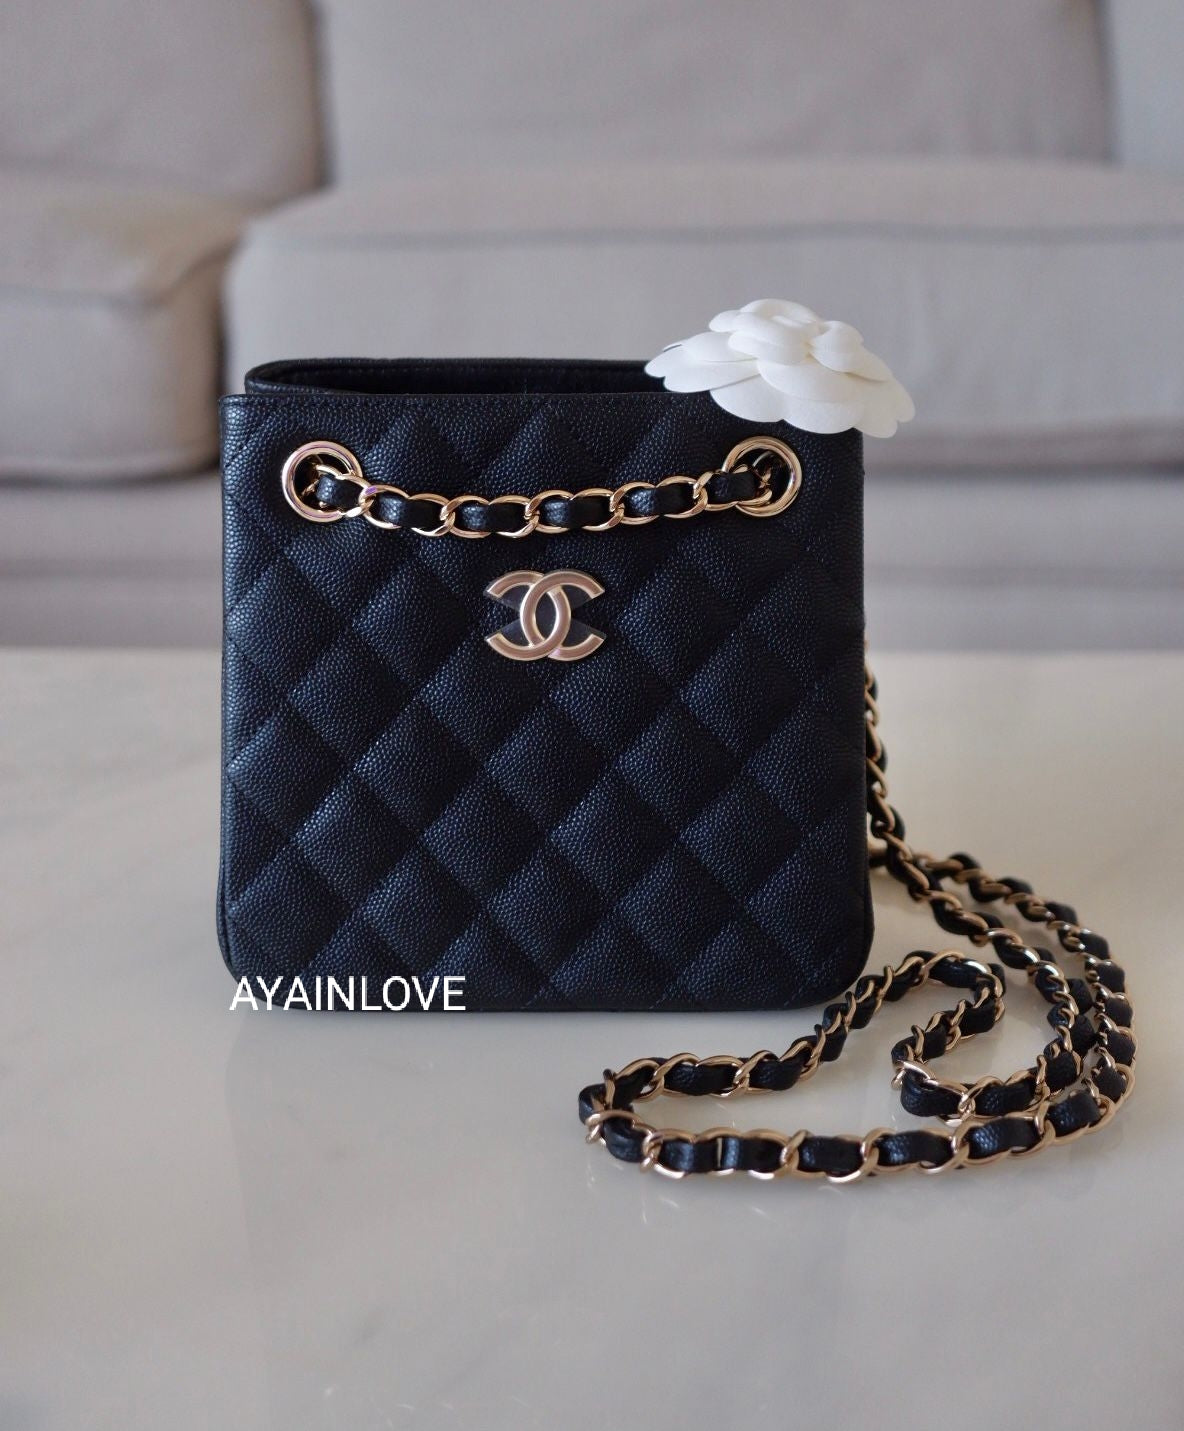 Chanel Bucket Bag in 23C Seafoam Grey (Green) Caviar LGHW